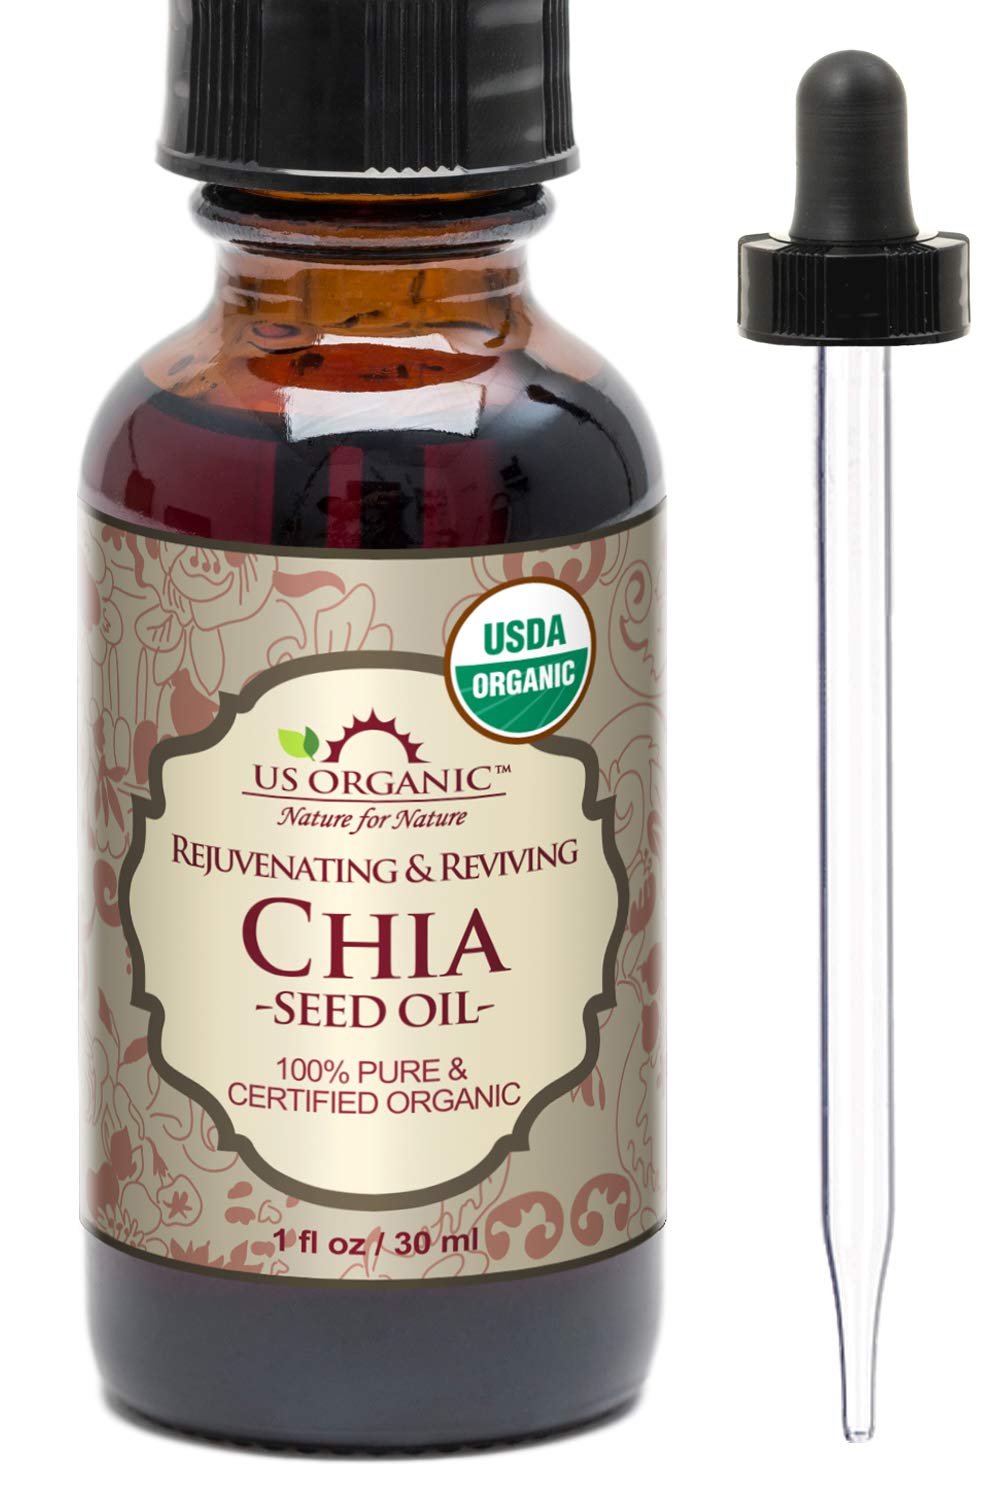  US Organic Chia Seed Oil, Certified Organic